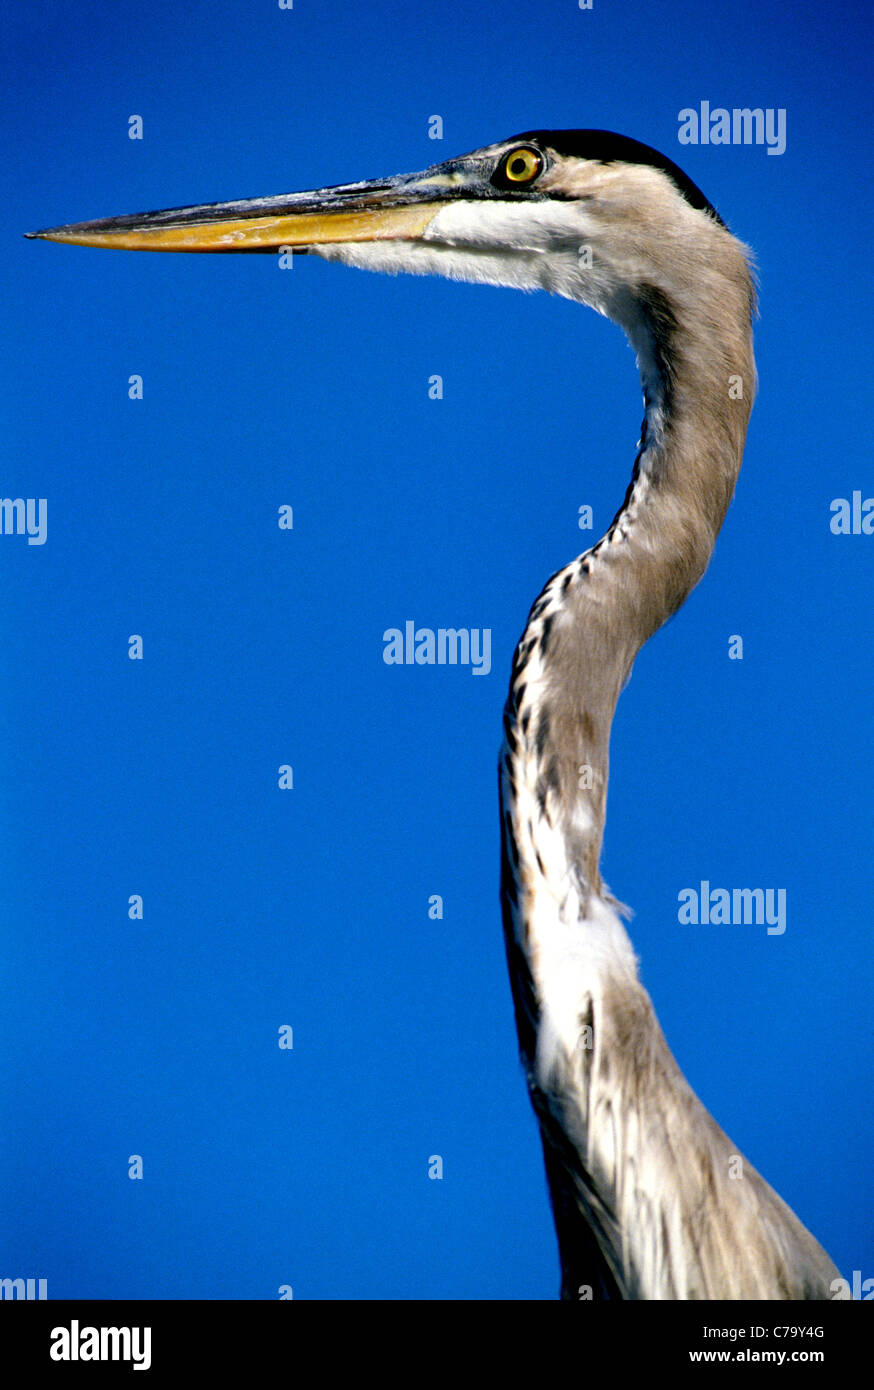 Il grande airone cenerino, segnato da un lungo collo, è il più grande heron in Nord America. Questo ritratto mostra la sua testa e collo contro un cielo blu. Foto Stock